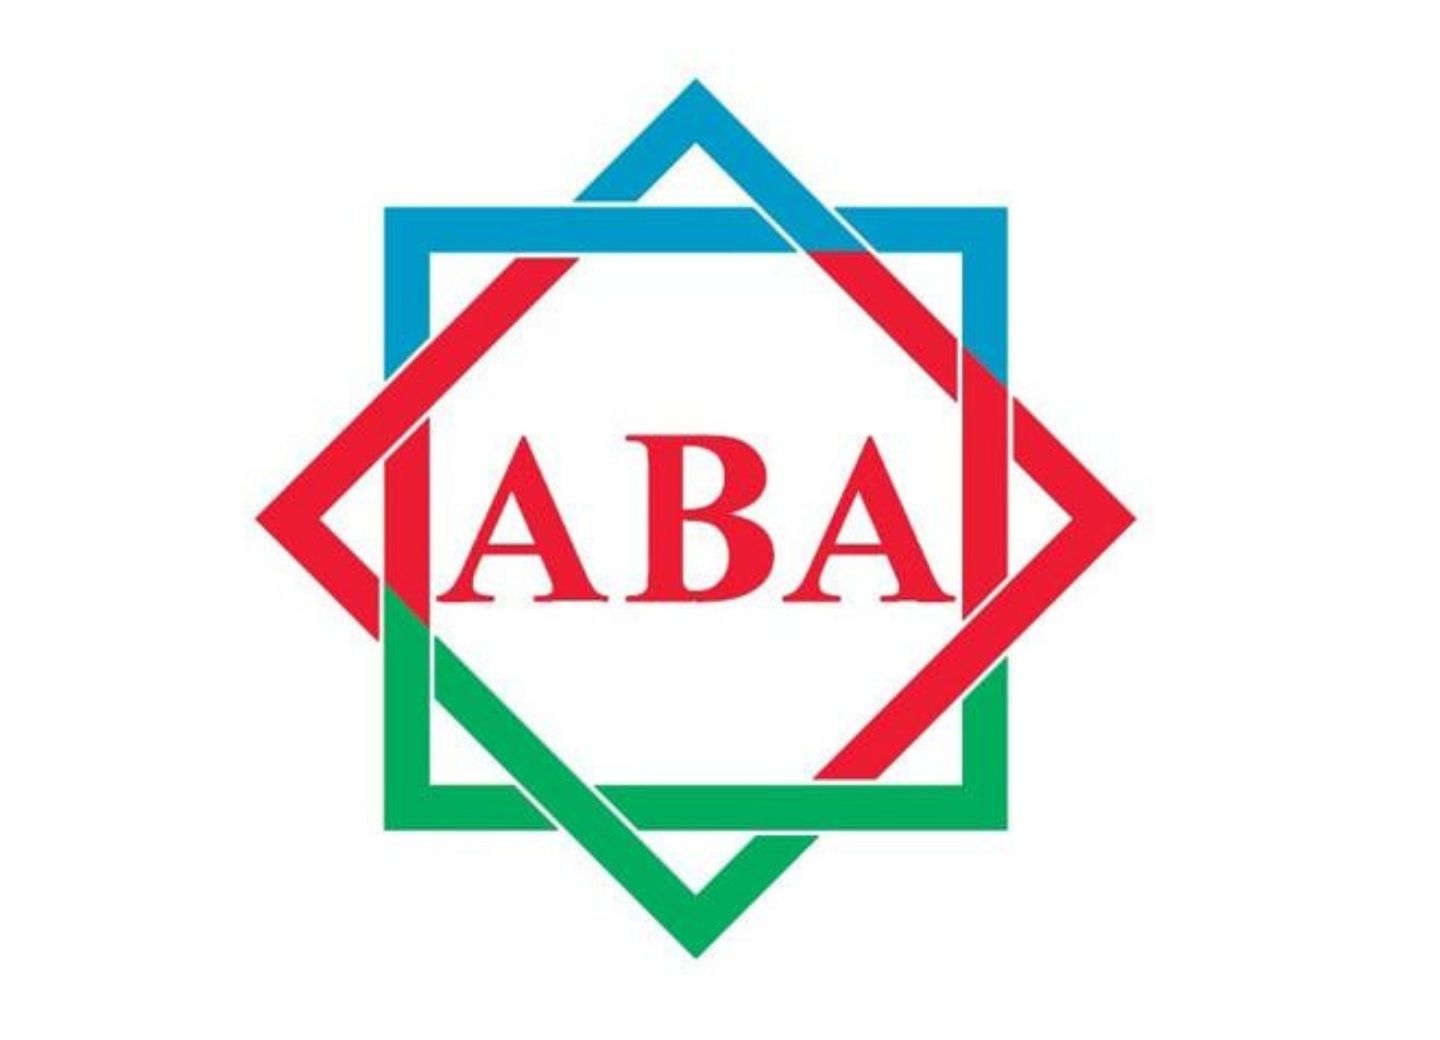 В Азербайджане зафиксирован стремительный темп развития платежной экосистемы - Ассоциация банков